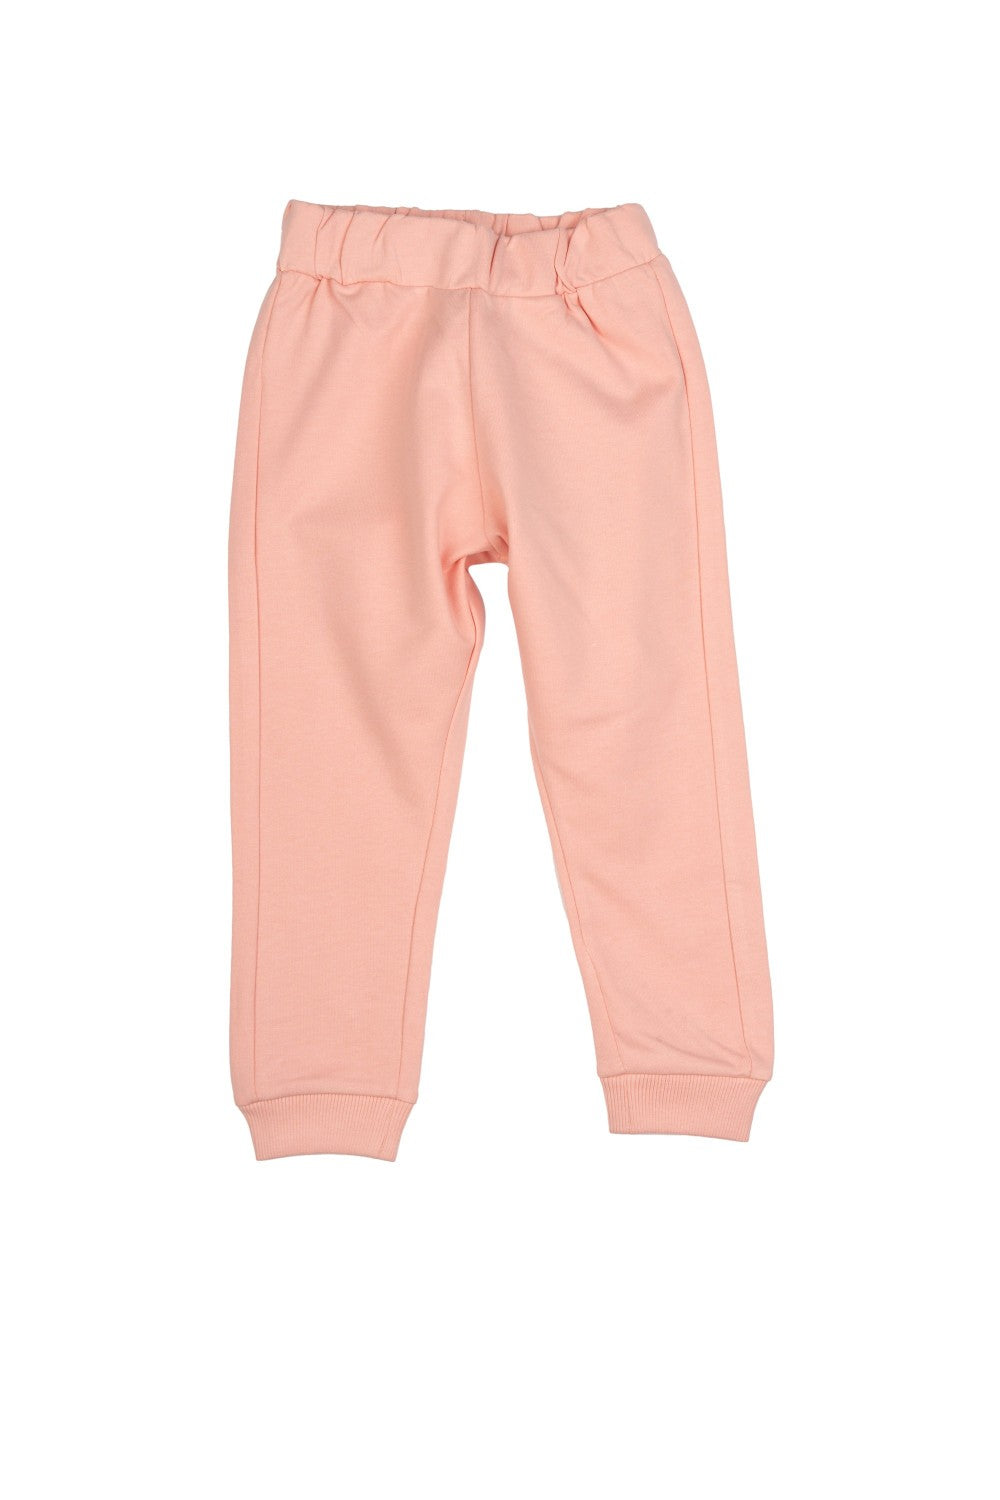 Pantalón de niña rosa VERANO/Charanga